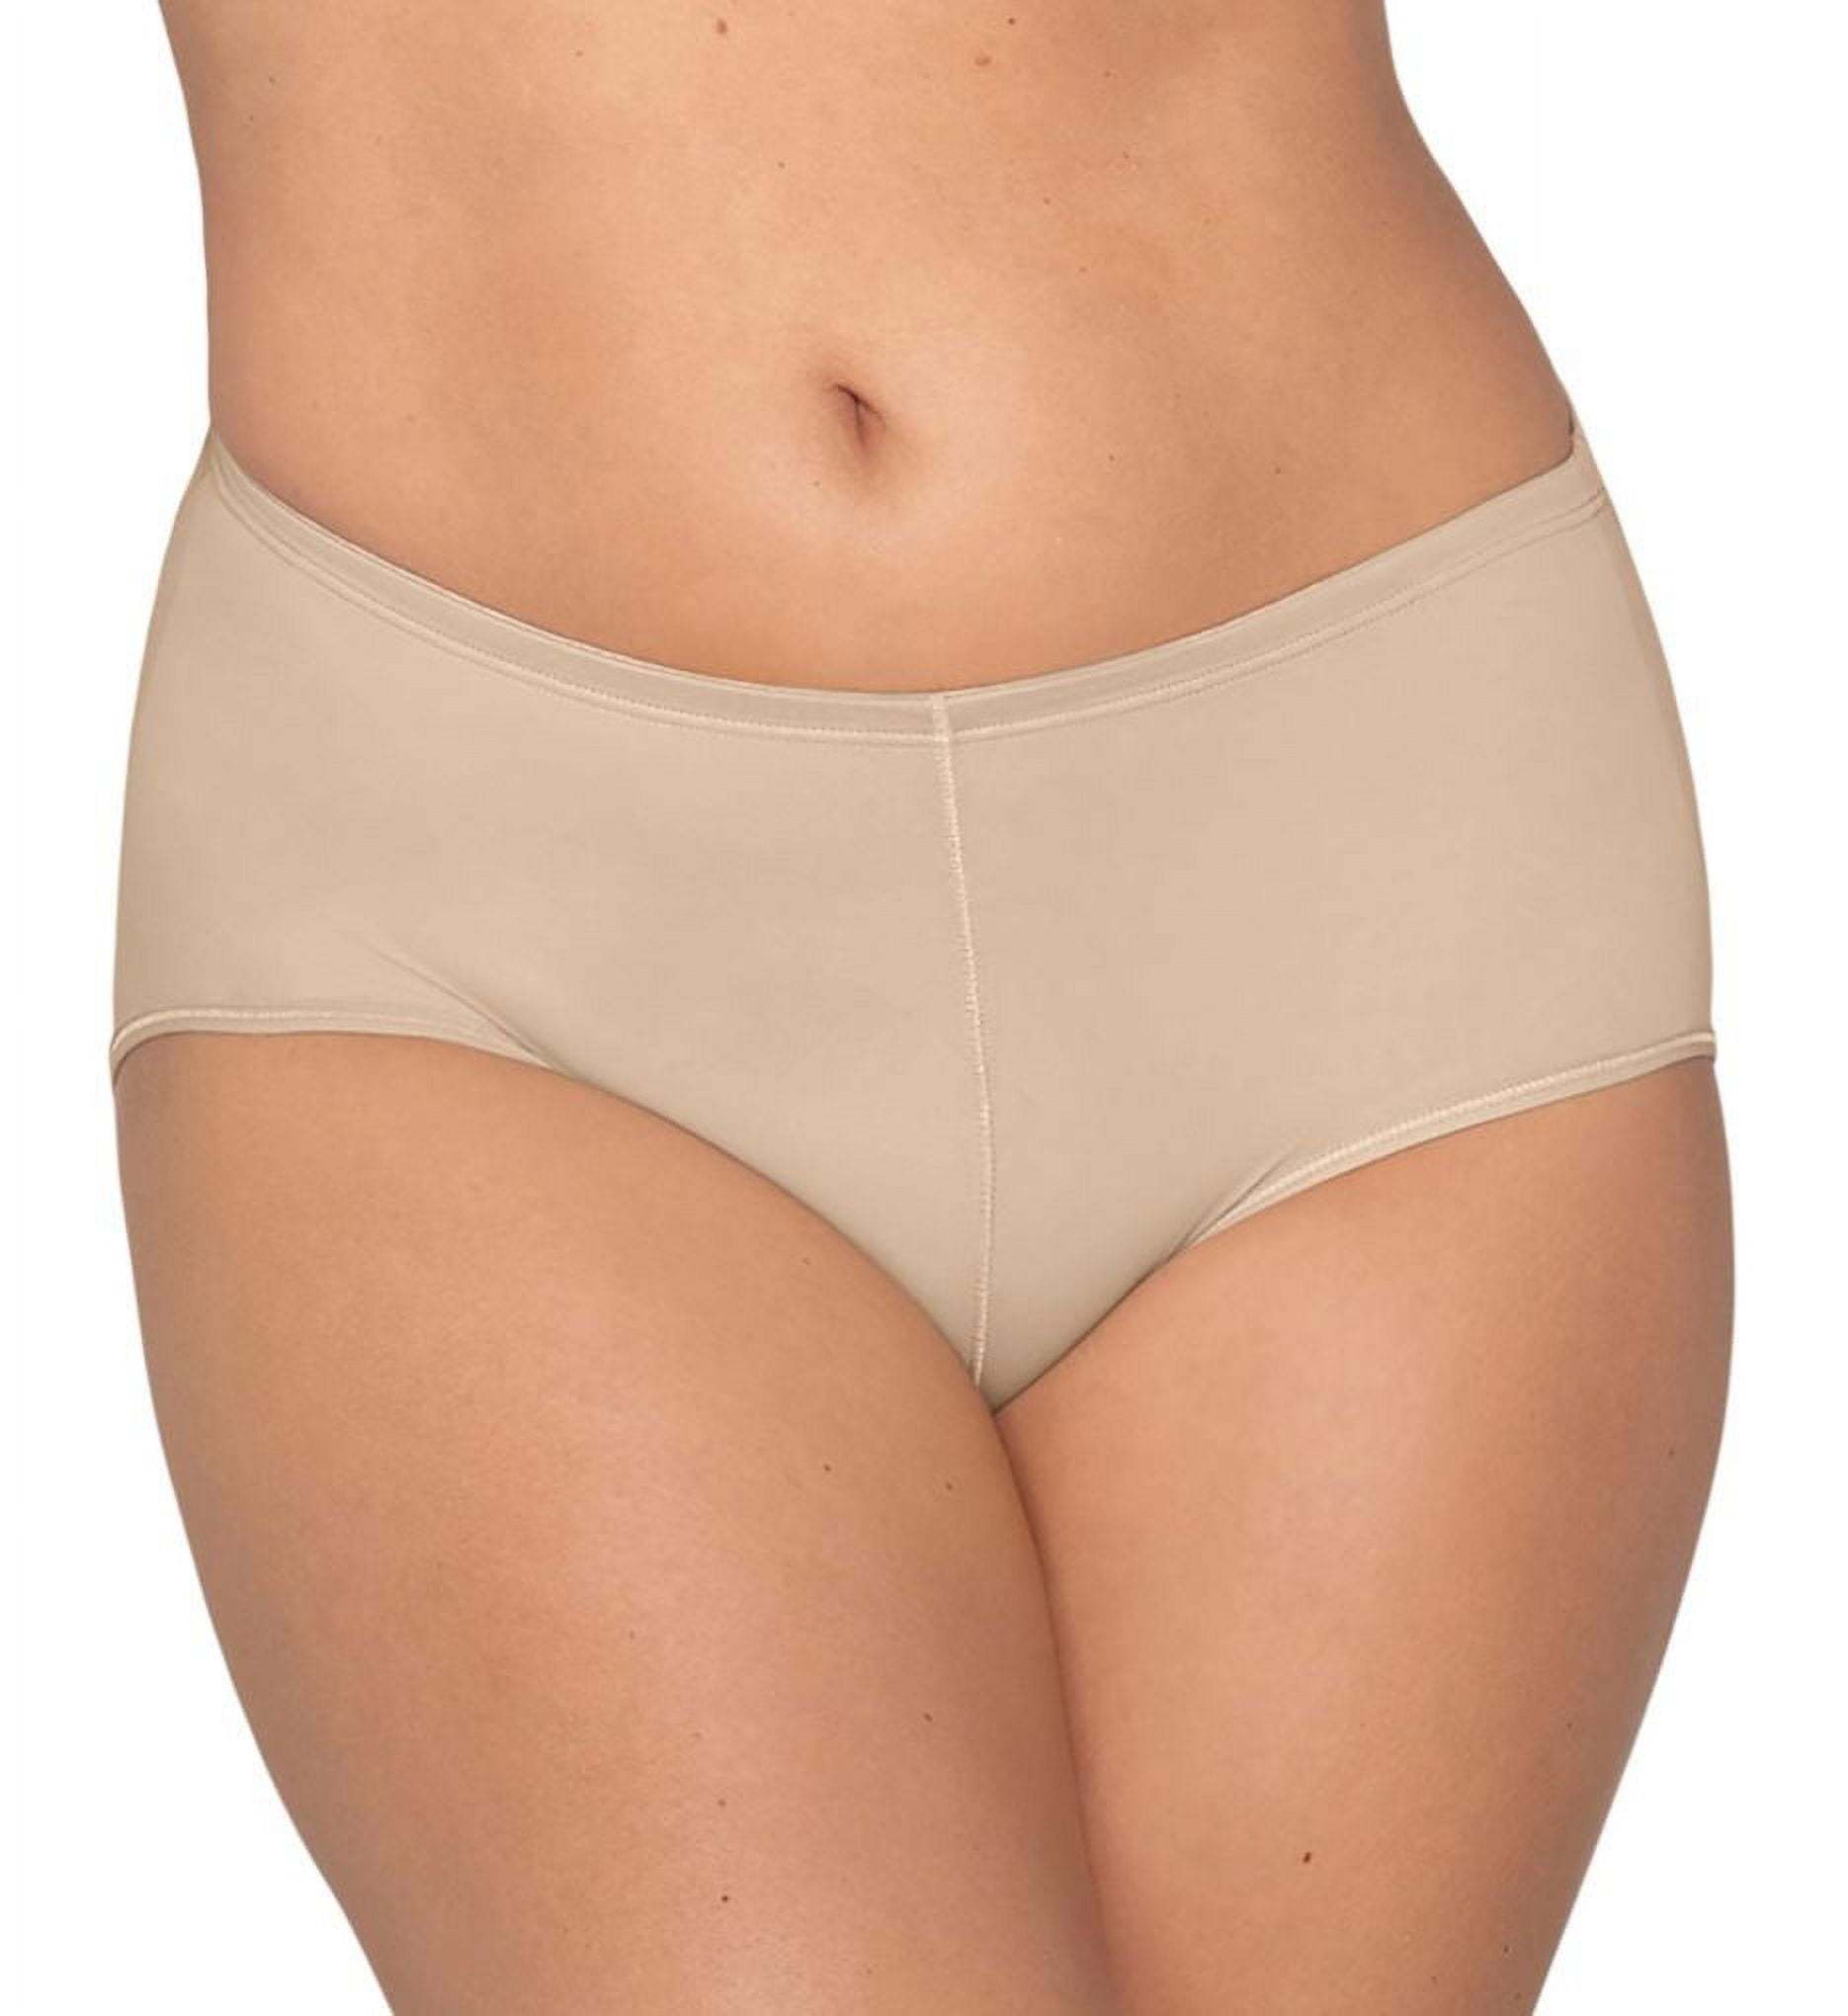  Butt Lift & Enhance Briefs, Women's Crotch Hip Lift